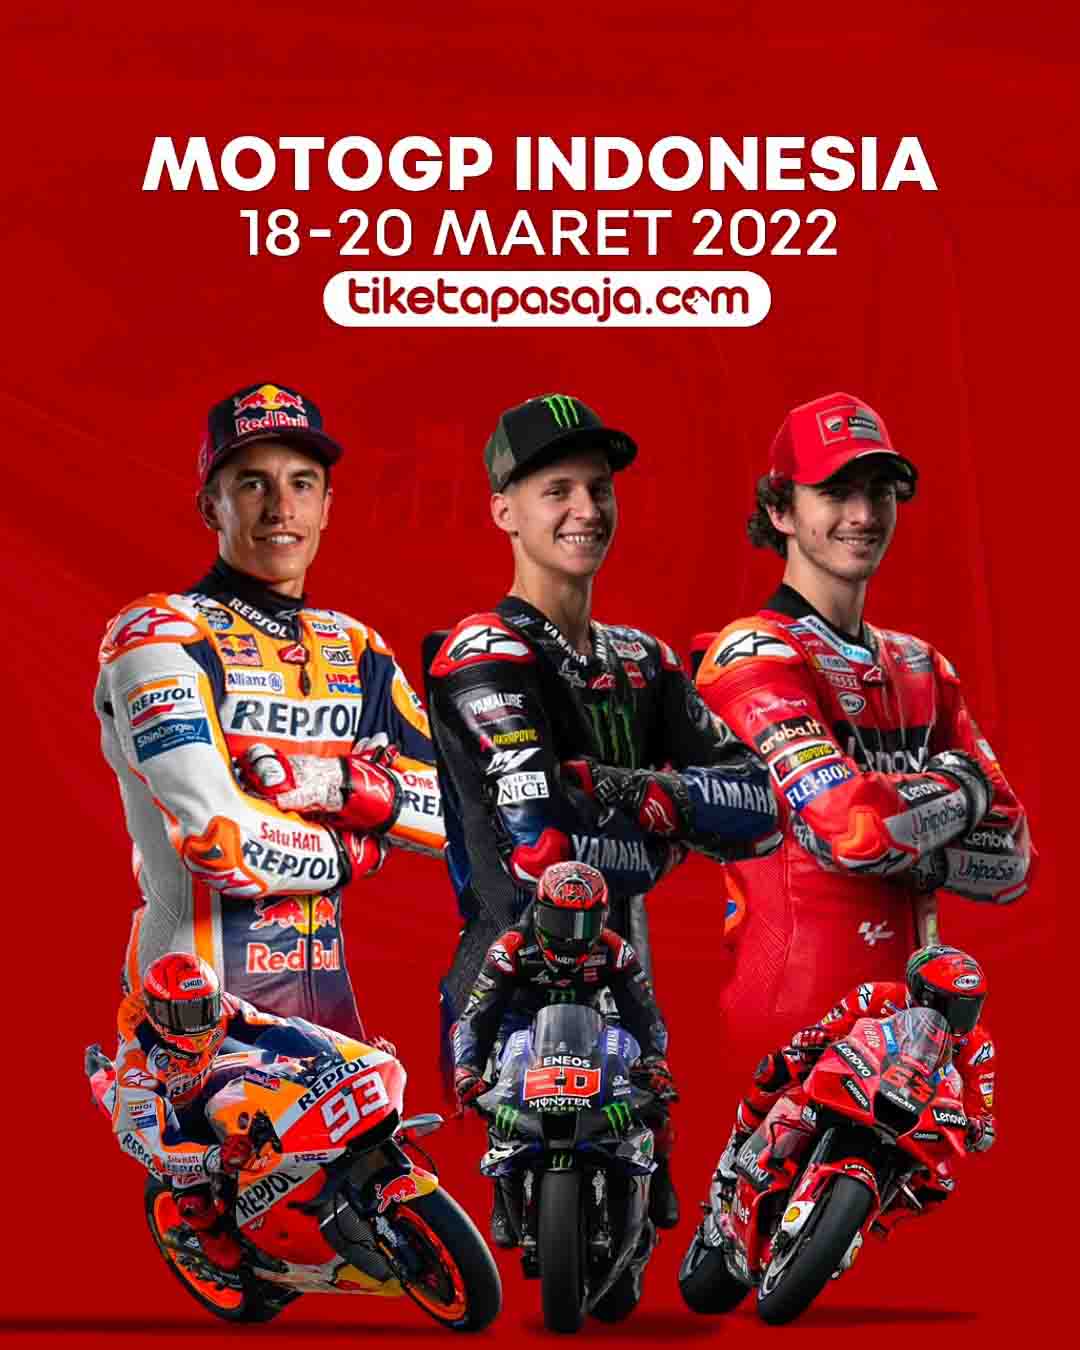 Hingga Hari Terakhir, Tiket MotoGP di Tiketapasaja.com Kian Laris